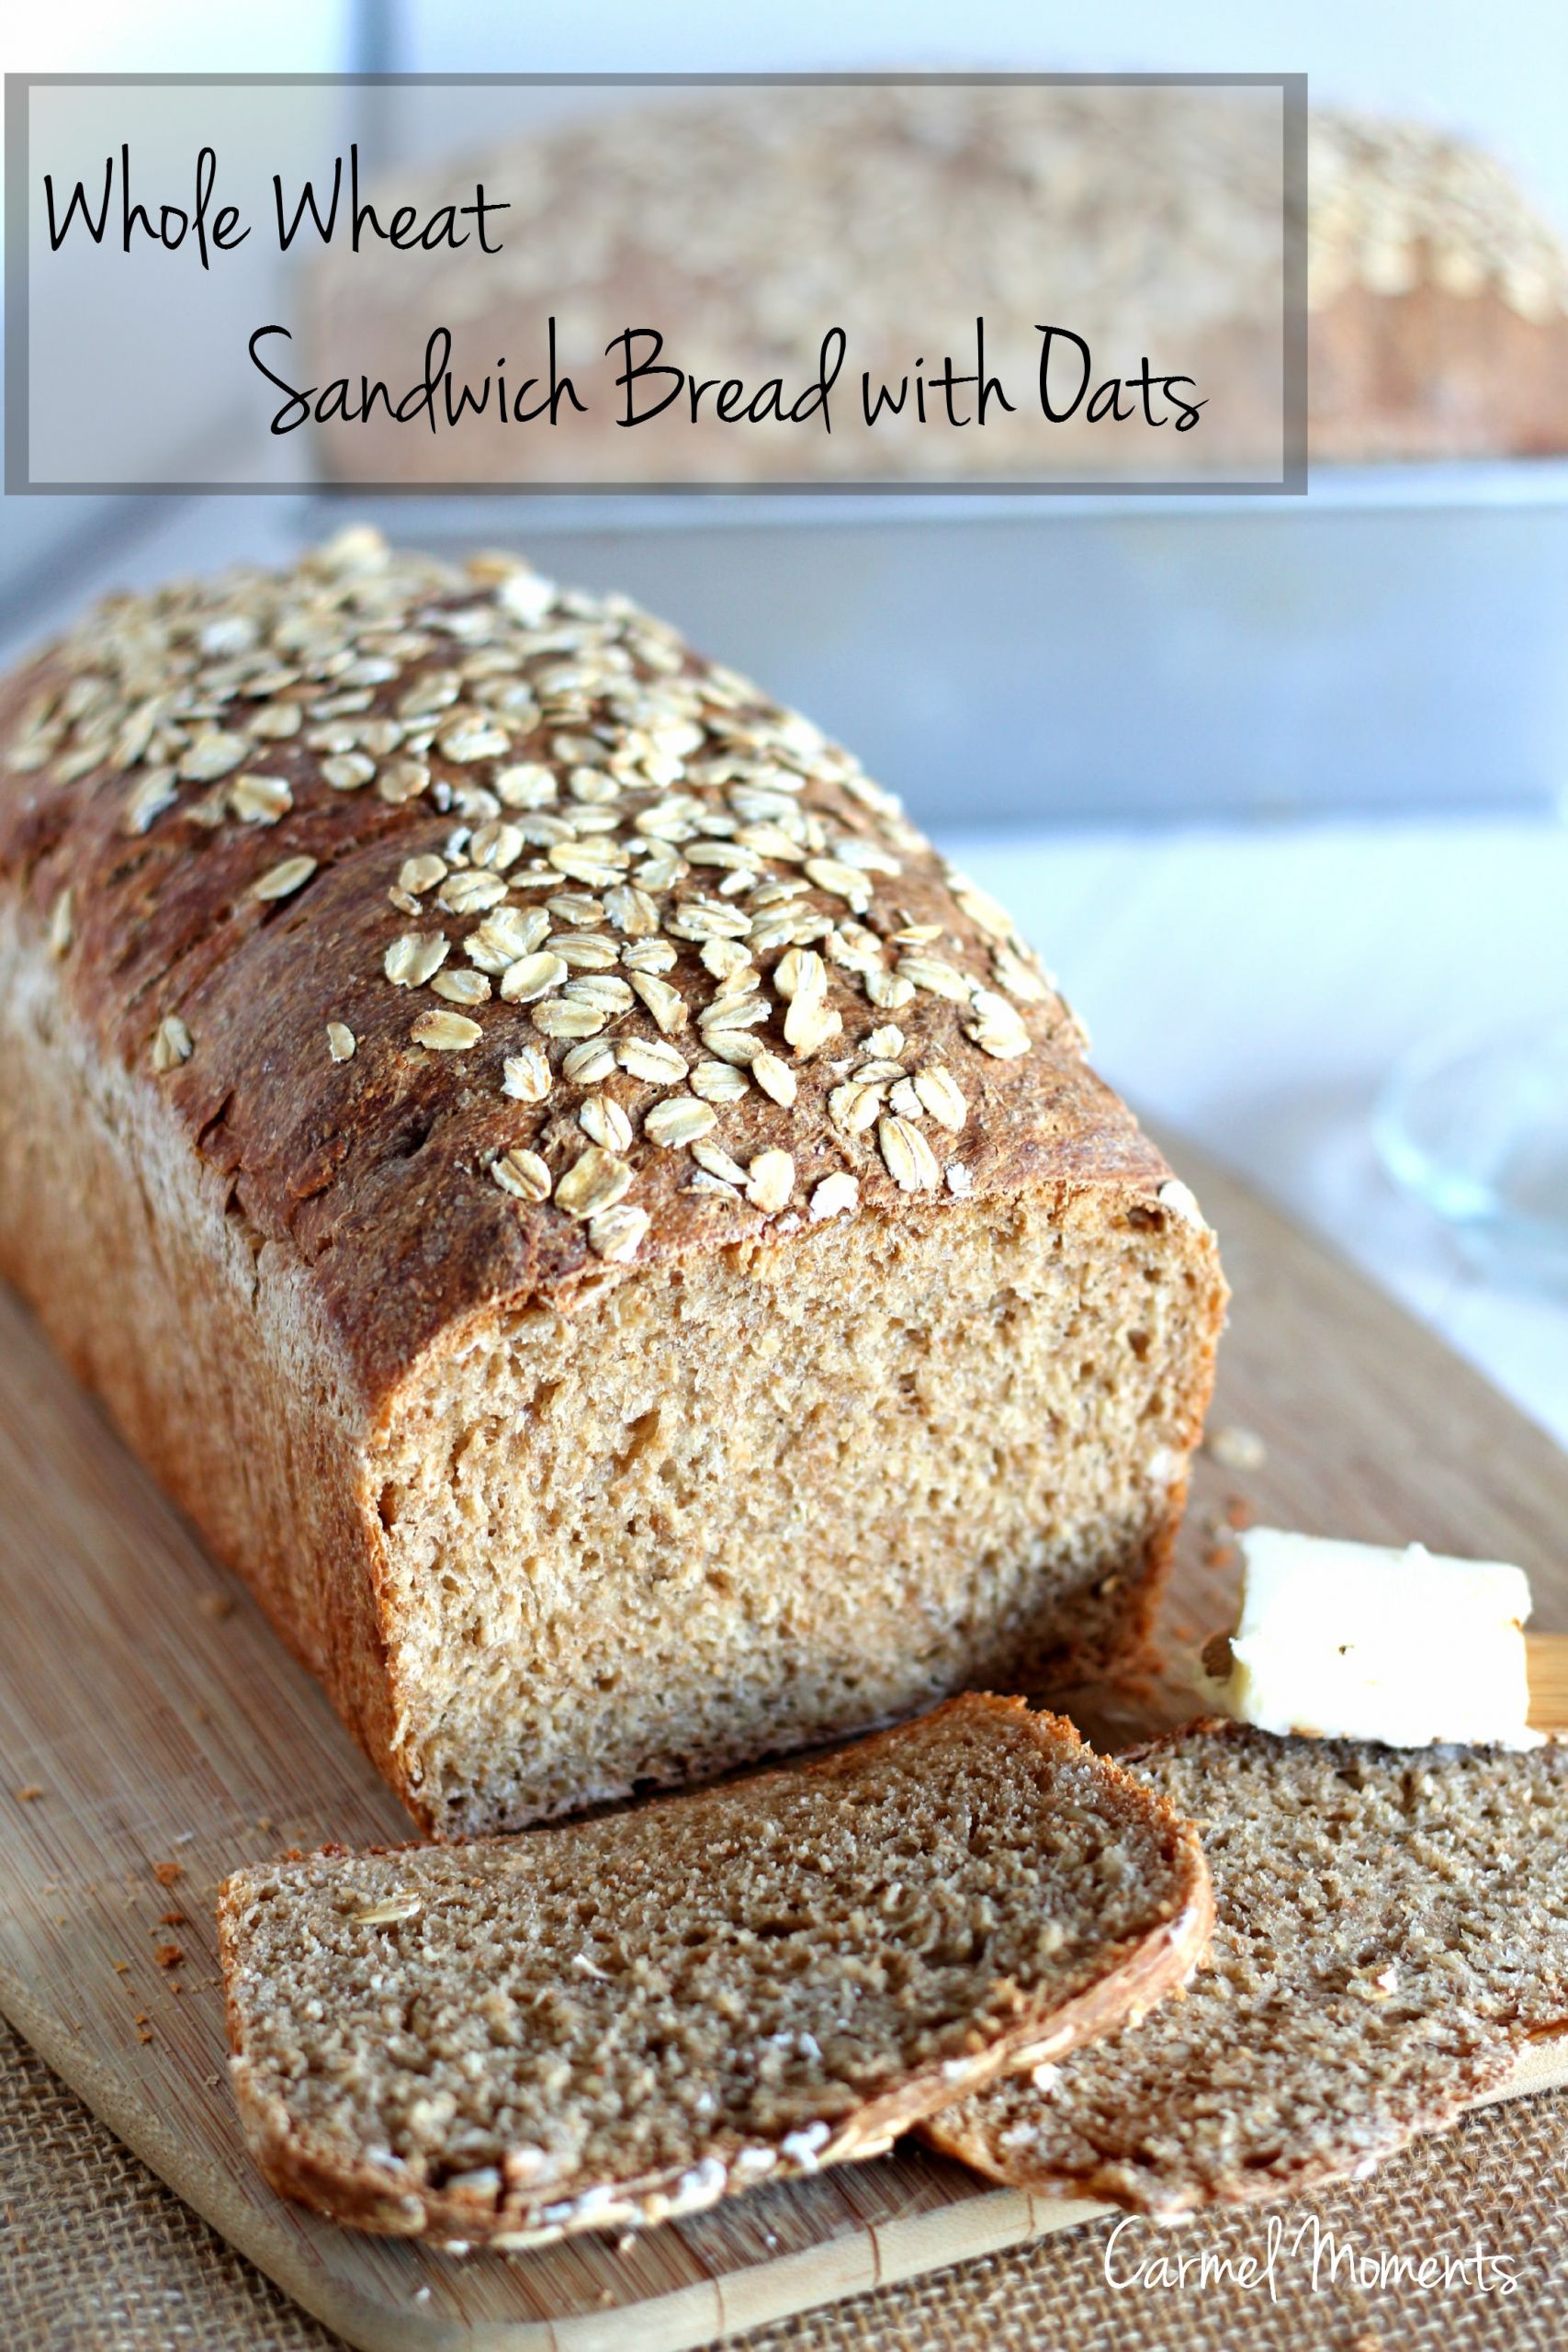 Wheat Sandwich Bread Recipe
 Whole Wheat Sandwich Bread with Oats